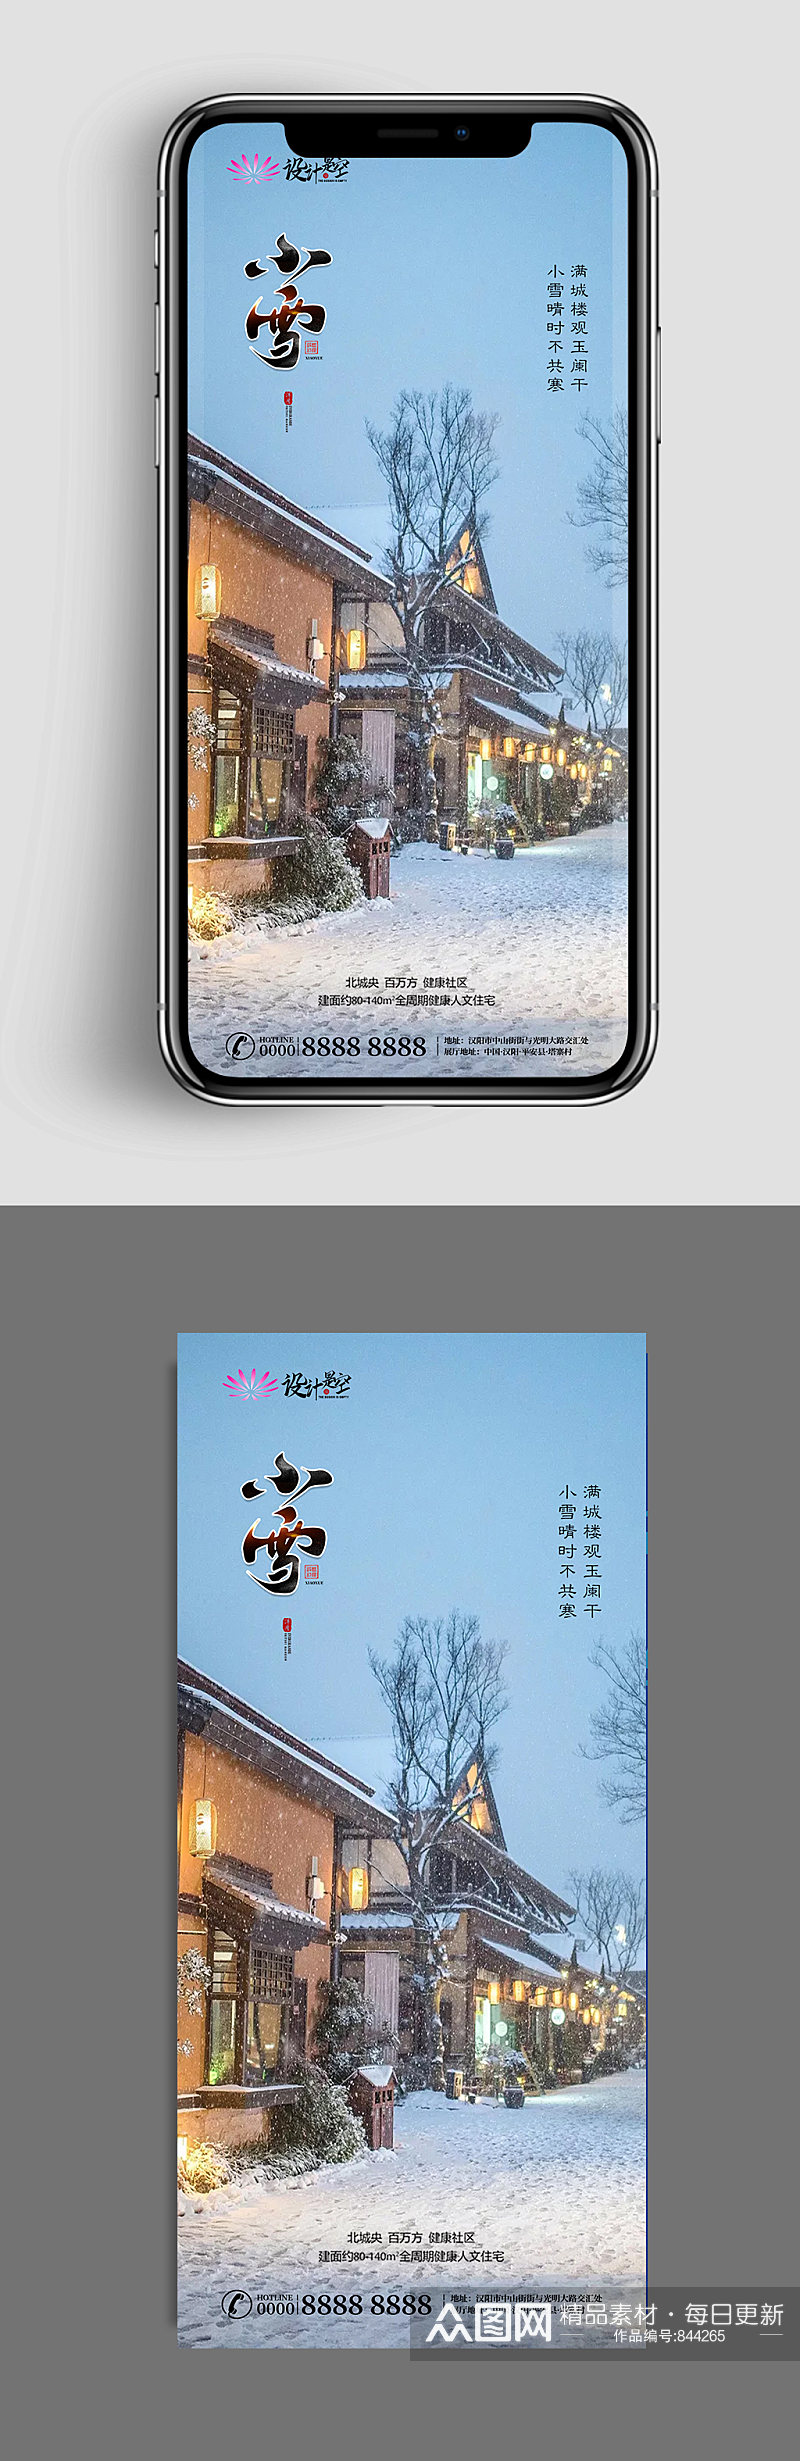 名古屋雪景手机微信图素材